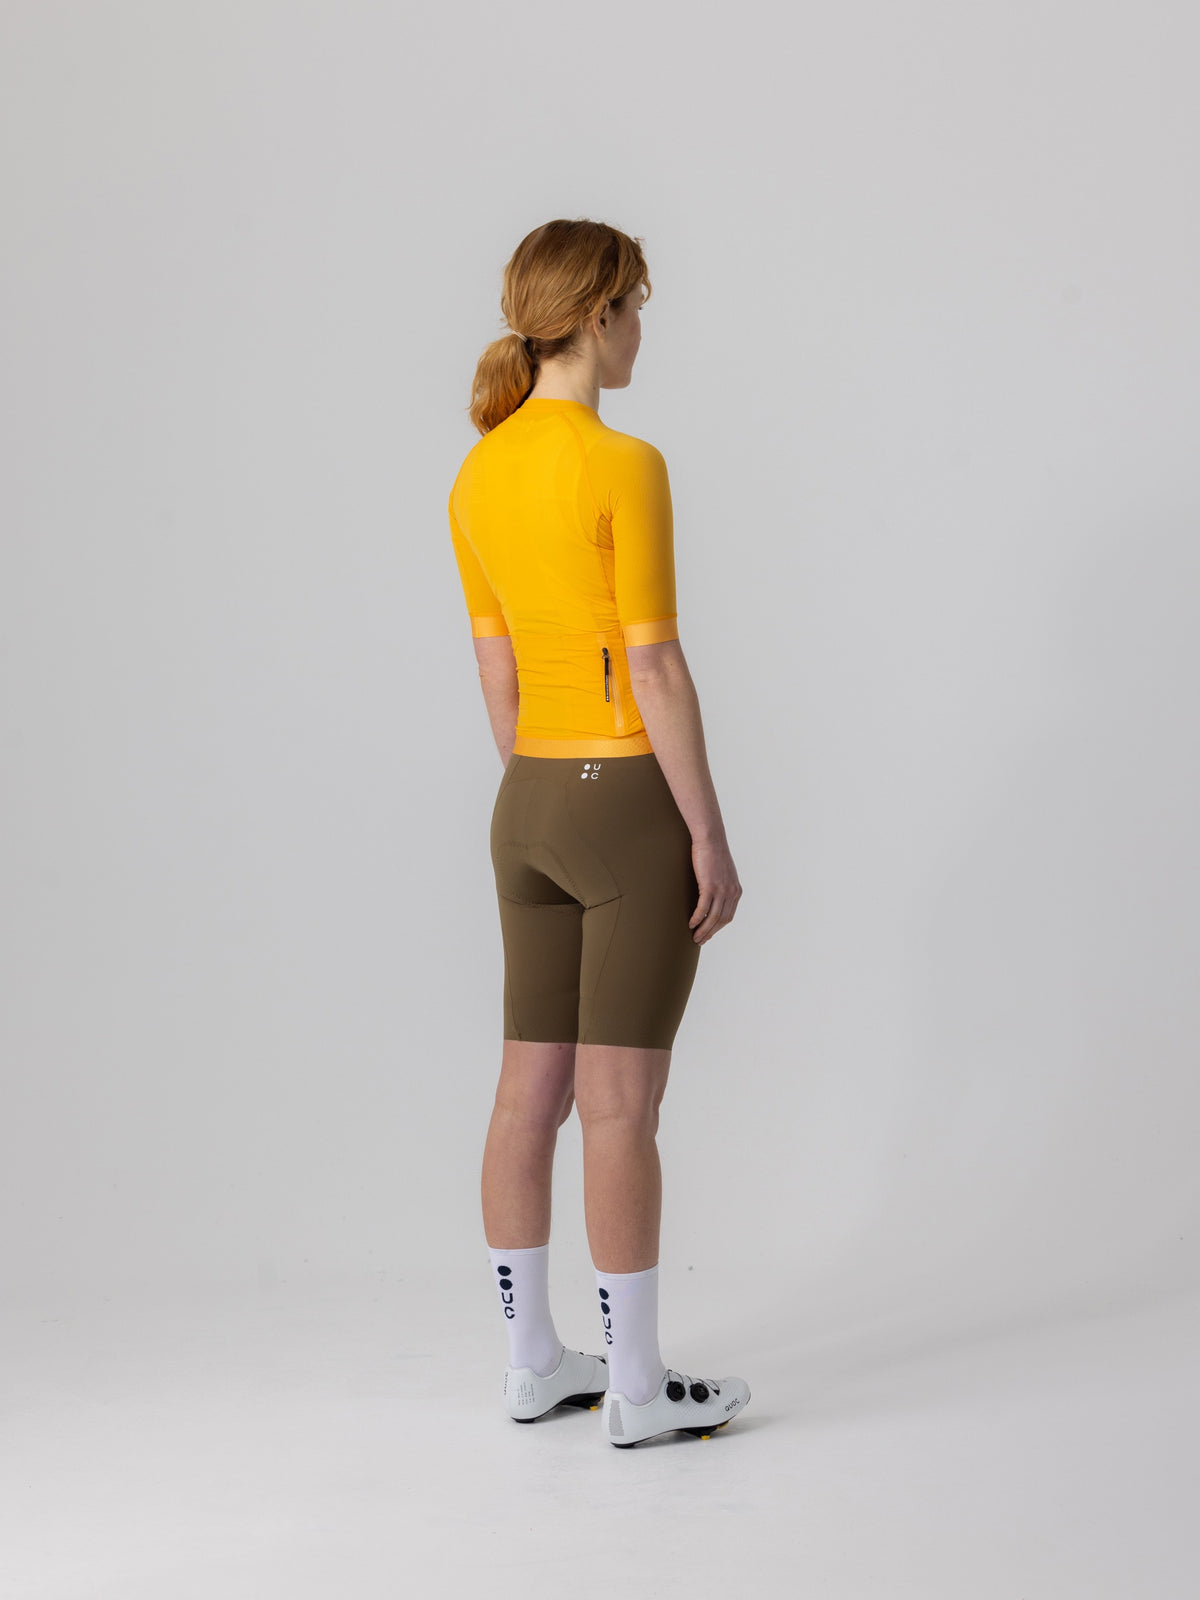 Universal Colours Chroma ウィメンズ サイクリングジャージ オレンジ | 超軽量フランス織りナイロンでパフォーマンス向上